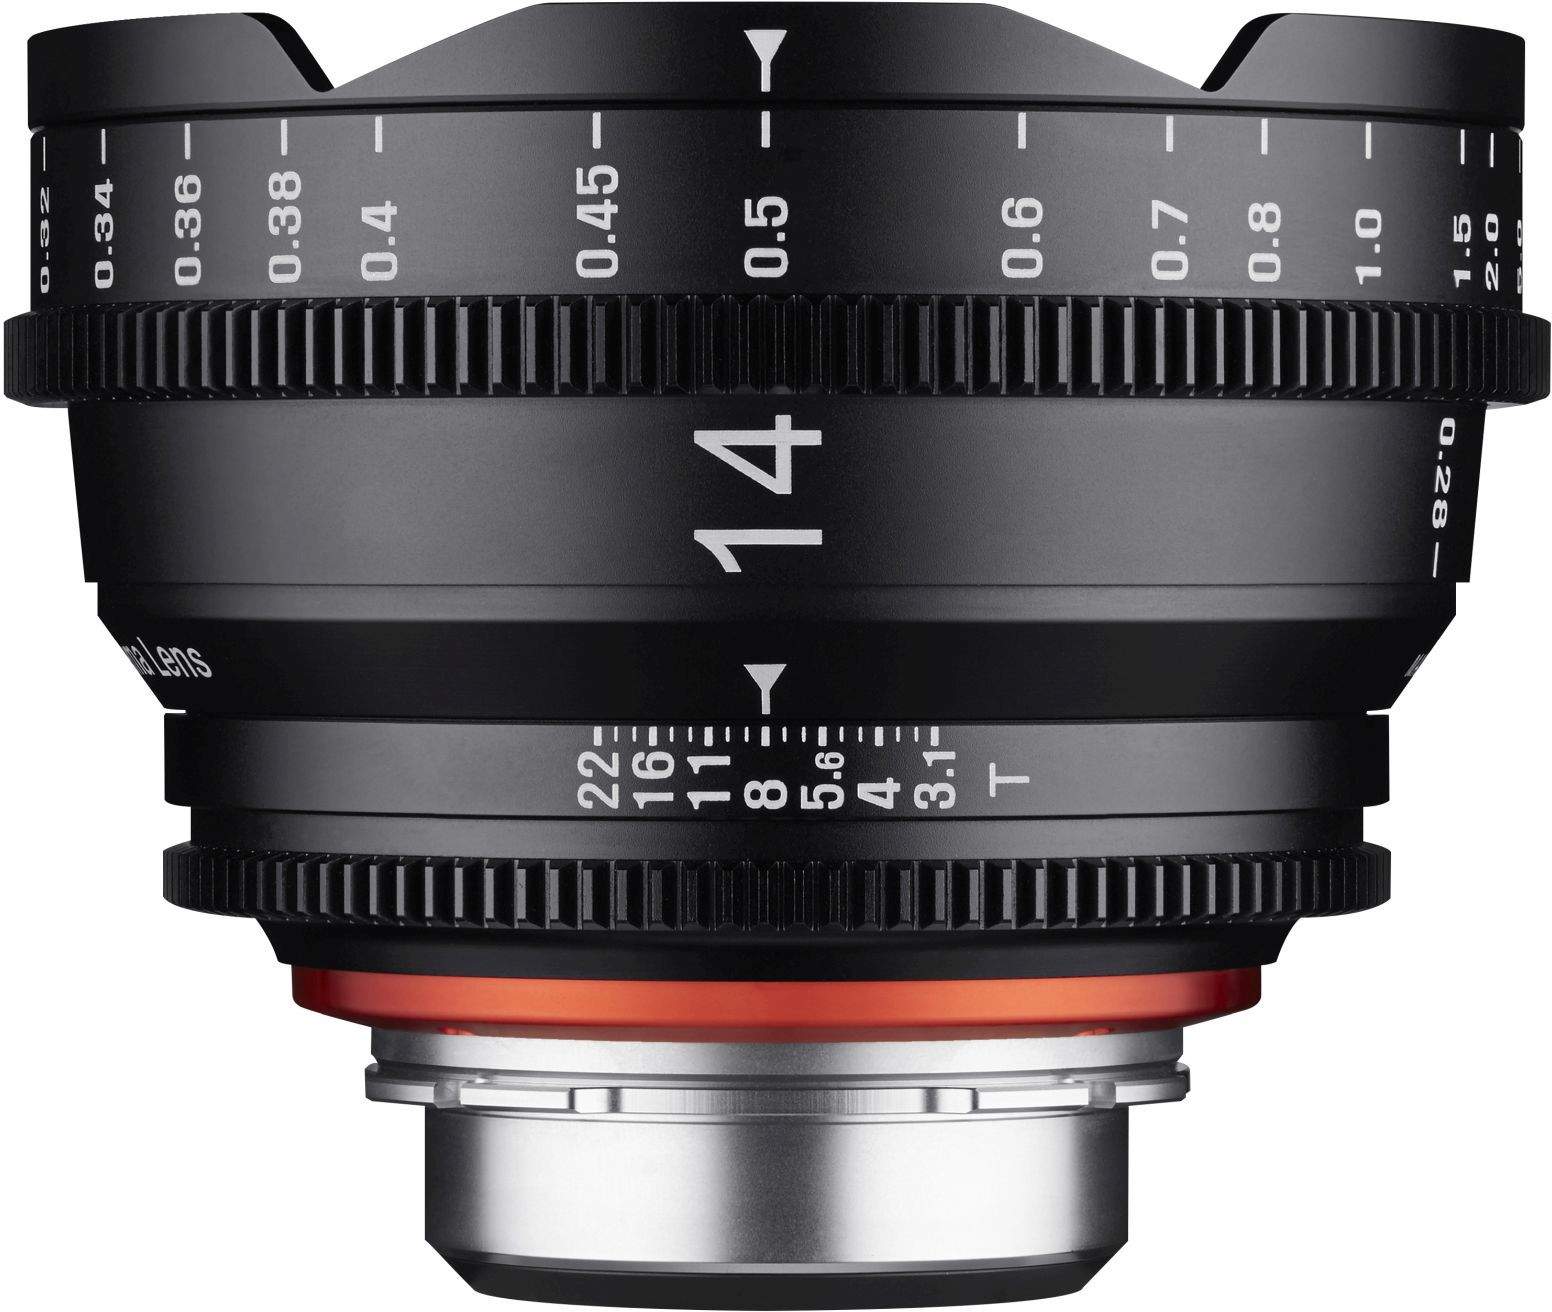 14mm T3.1 XEEN Canon EF Full Frame Cinema Lens